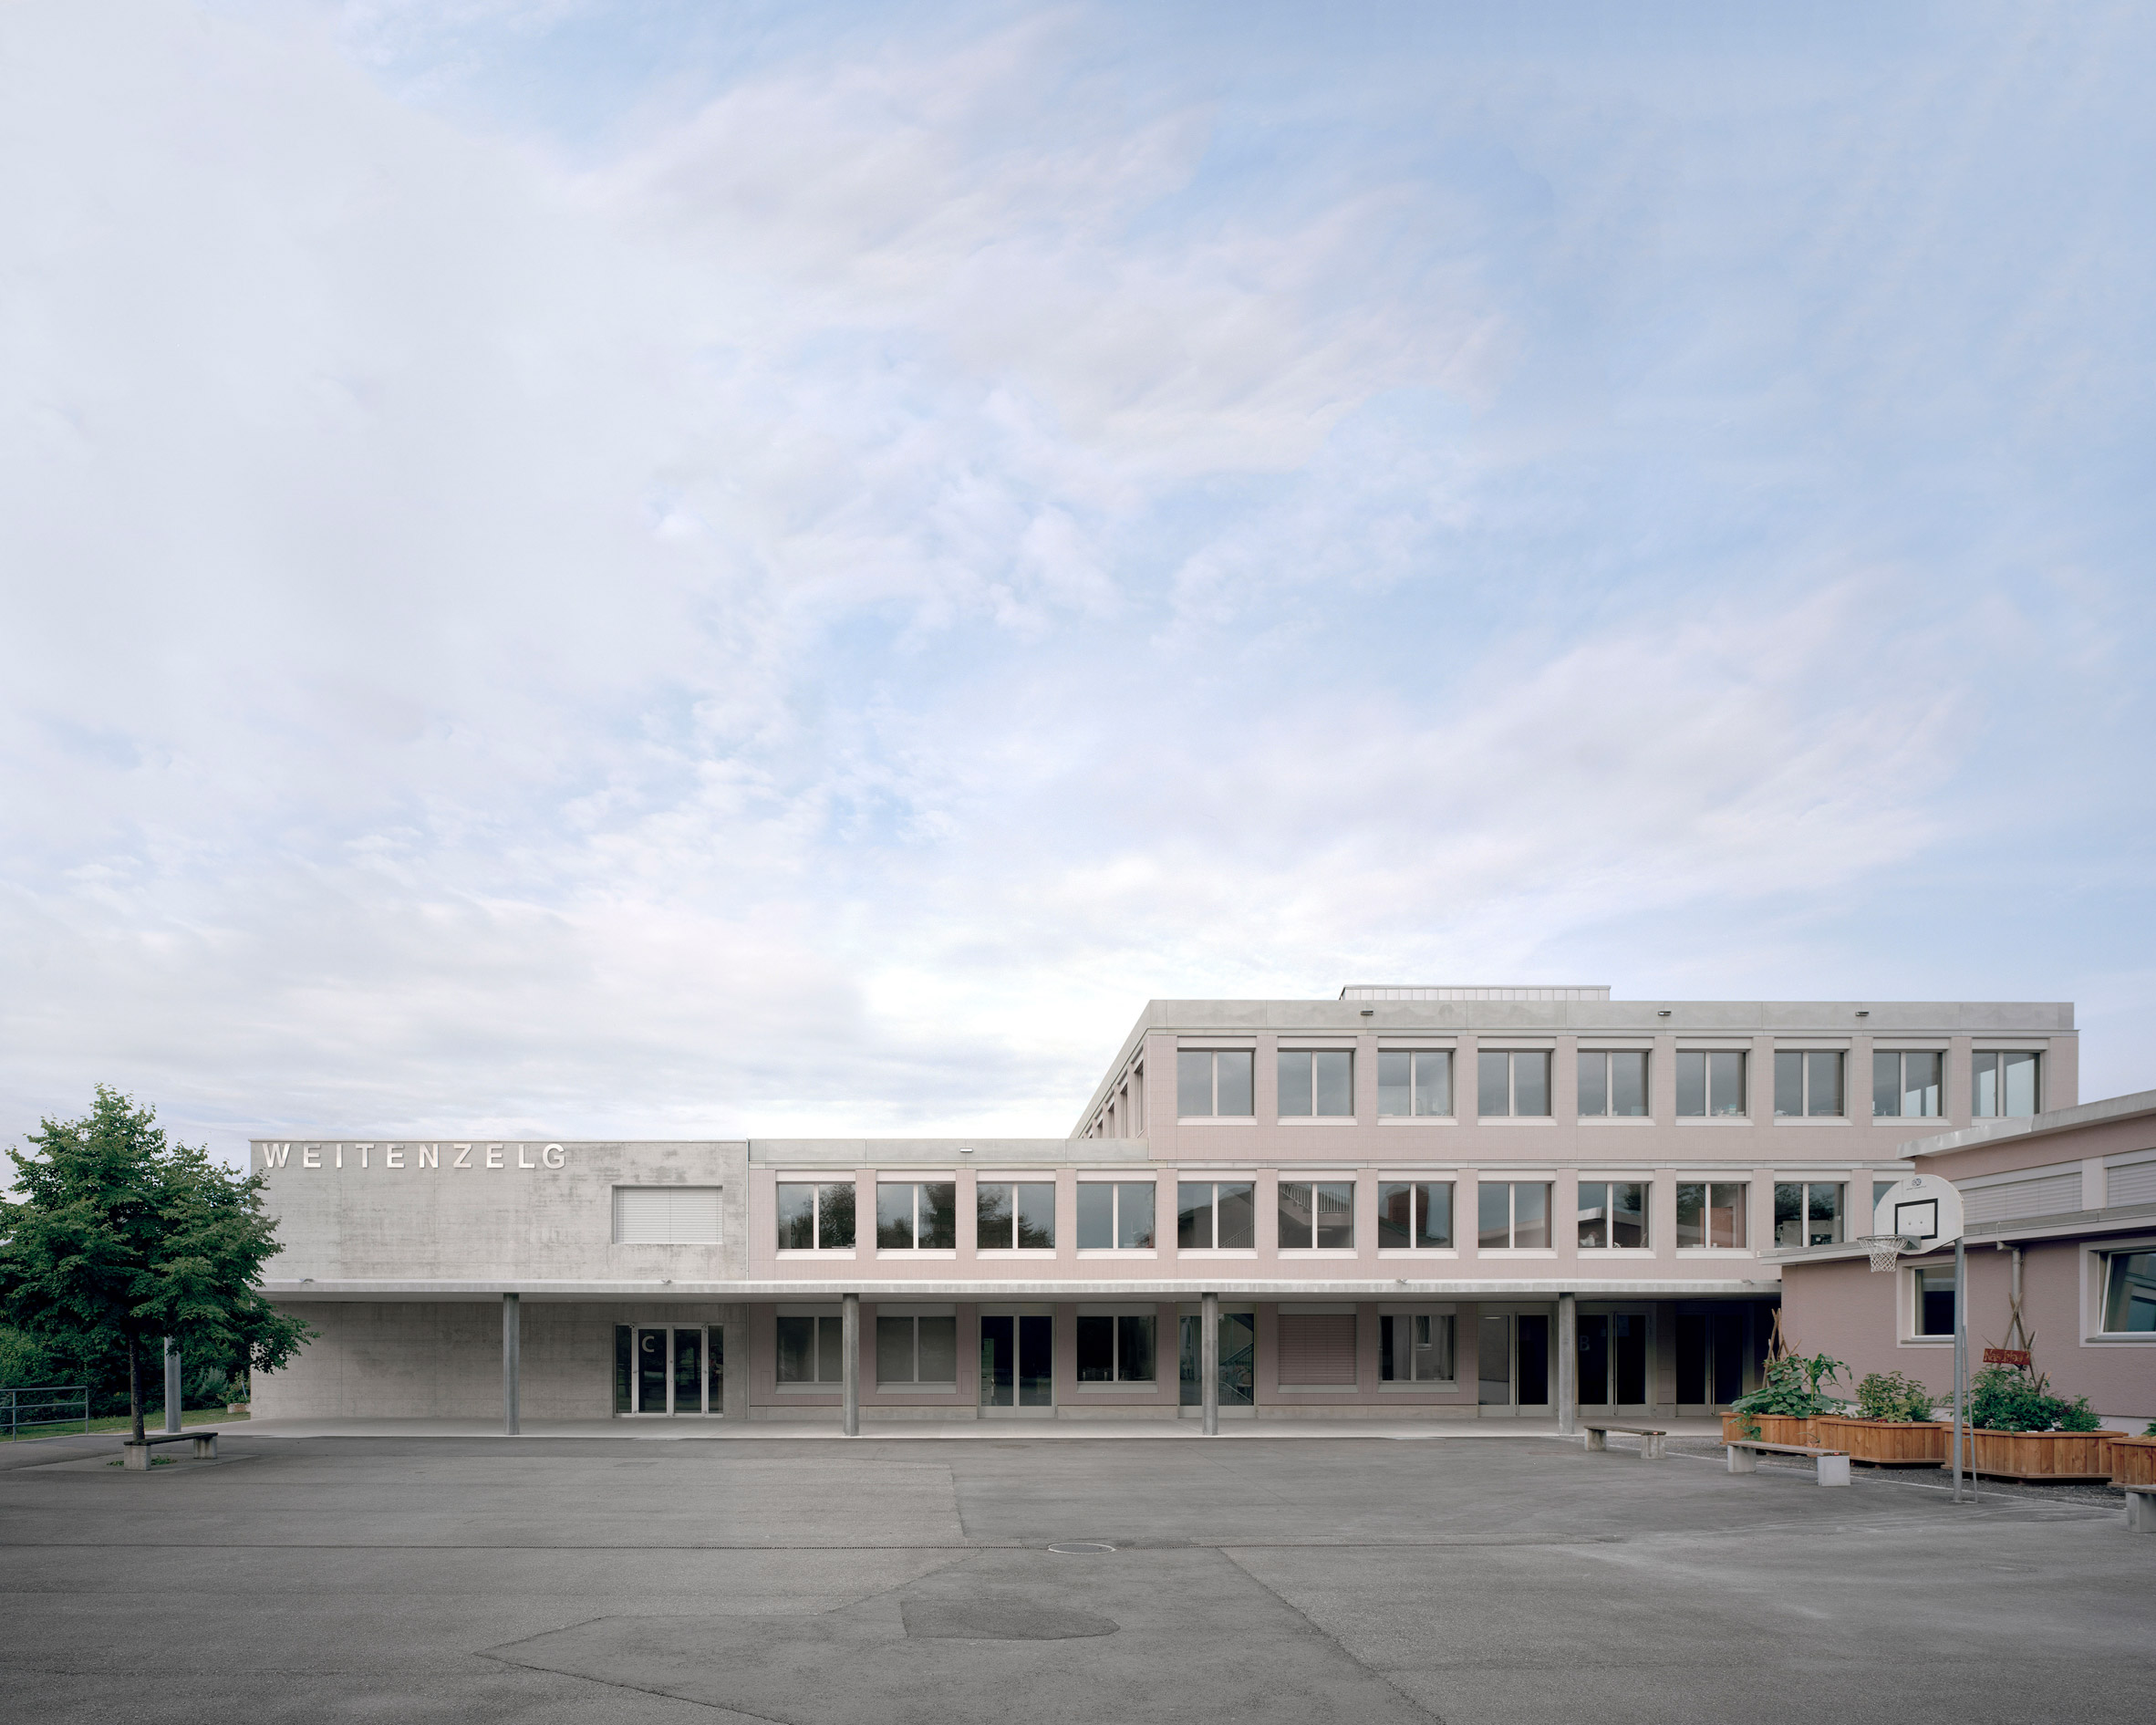 Secondary School Romanshorn by Bak Gordon Arquitectos